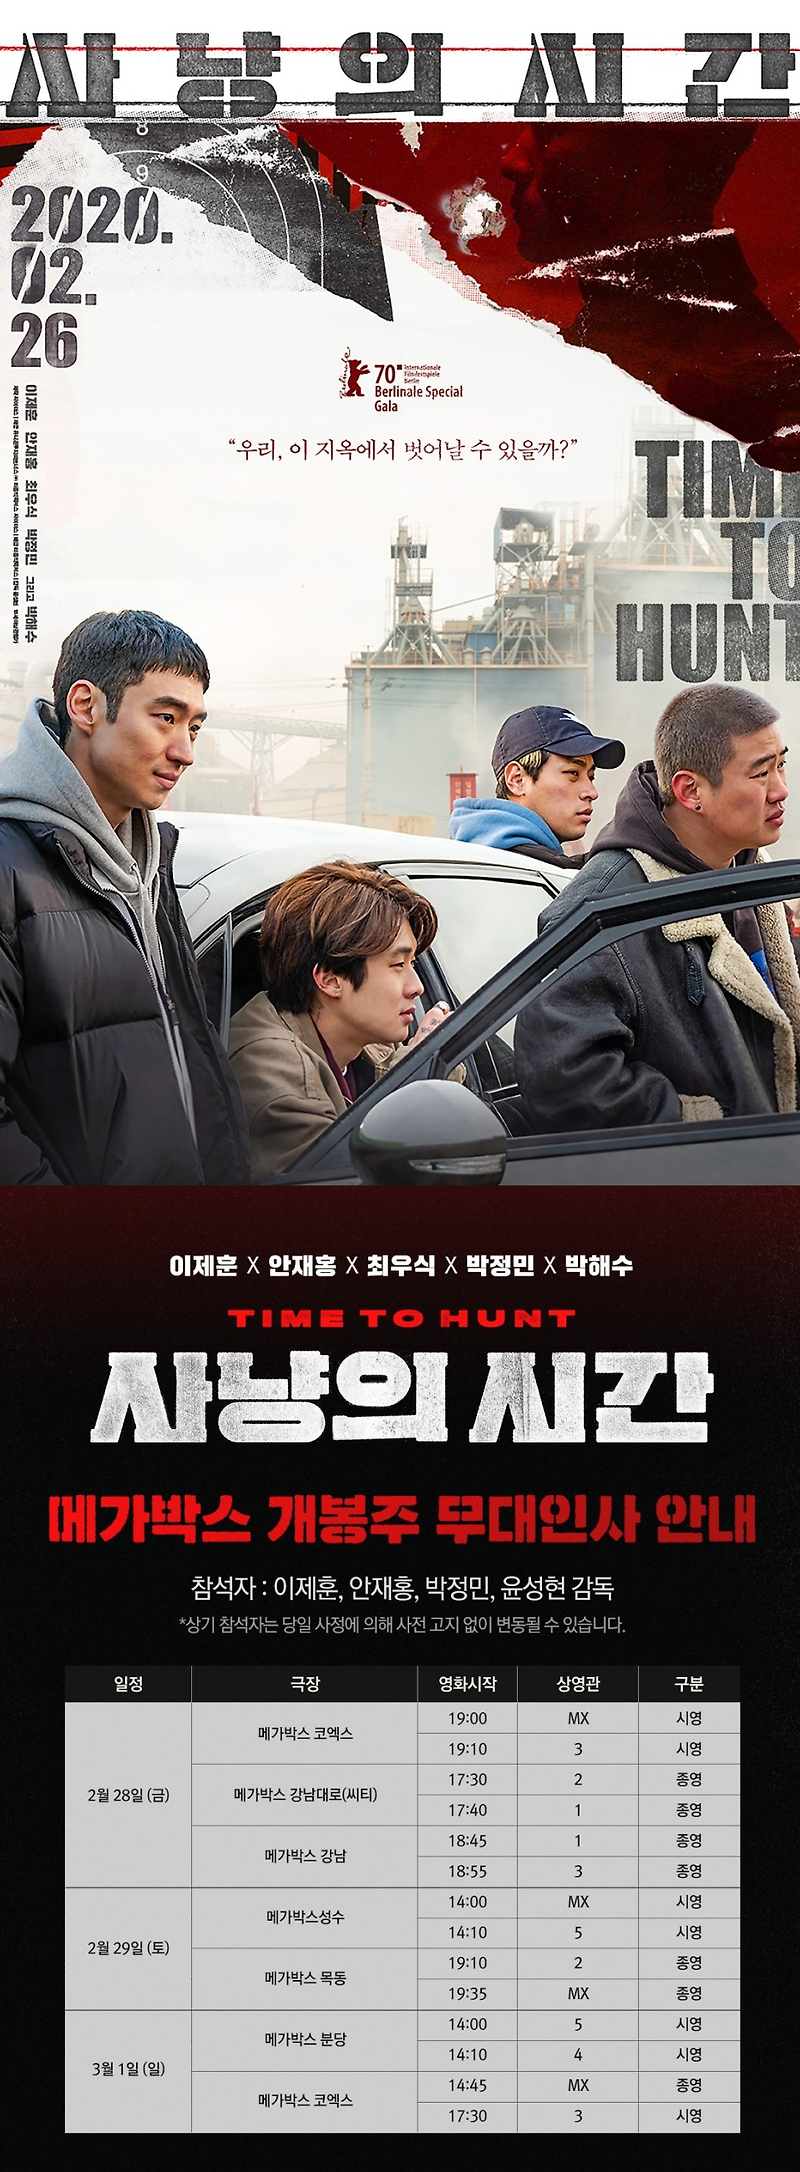 배우 박정민 : 영화 사냥의때때로 메가박스 무대인사 1정 확인